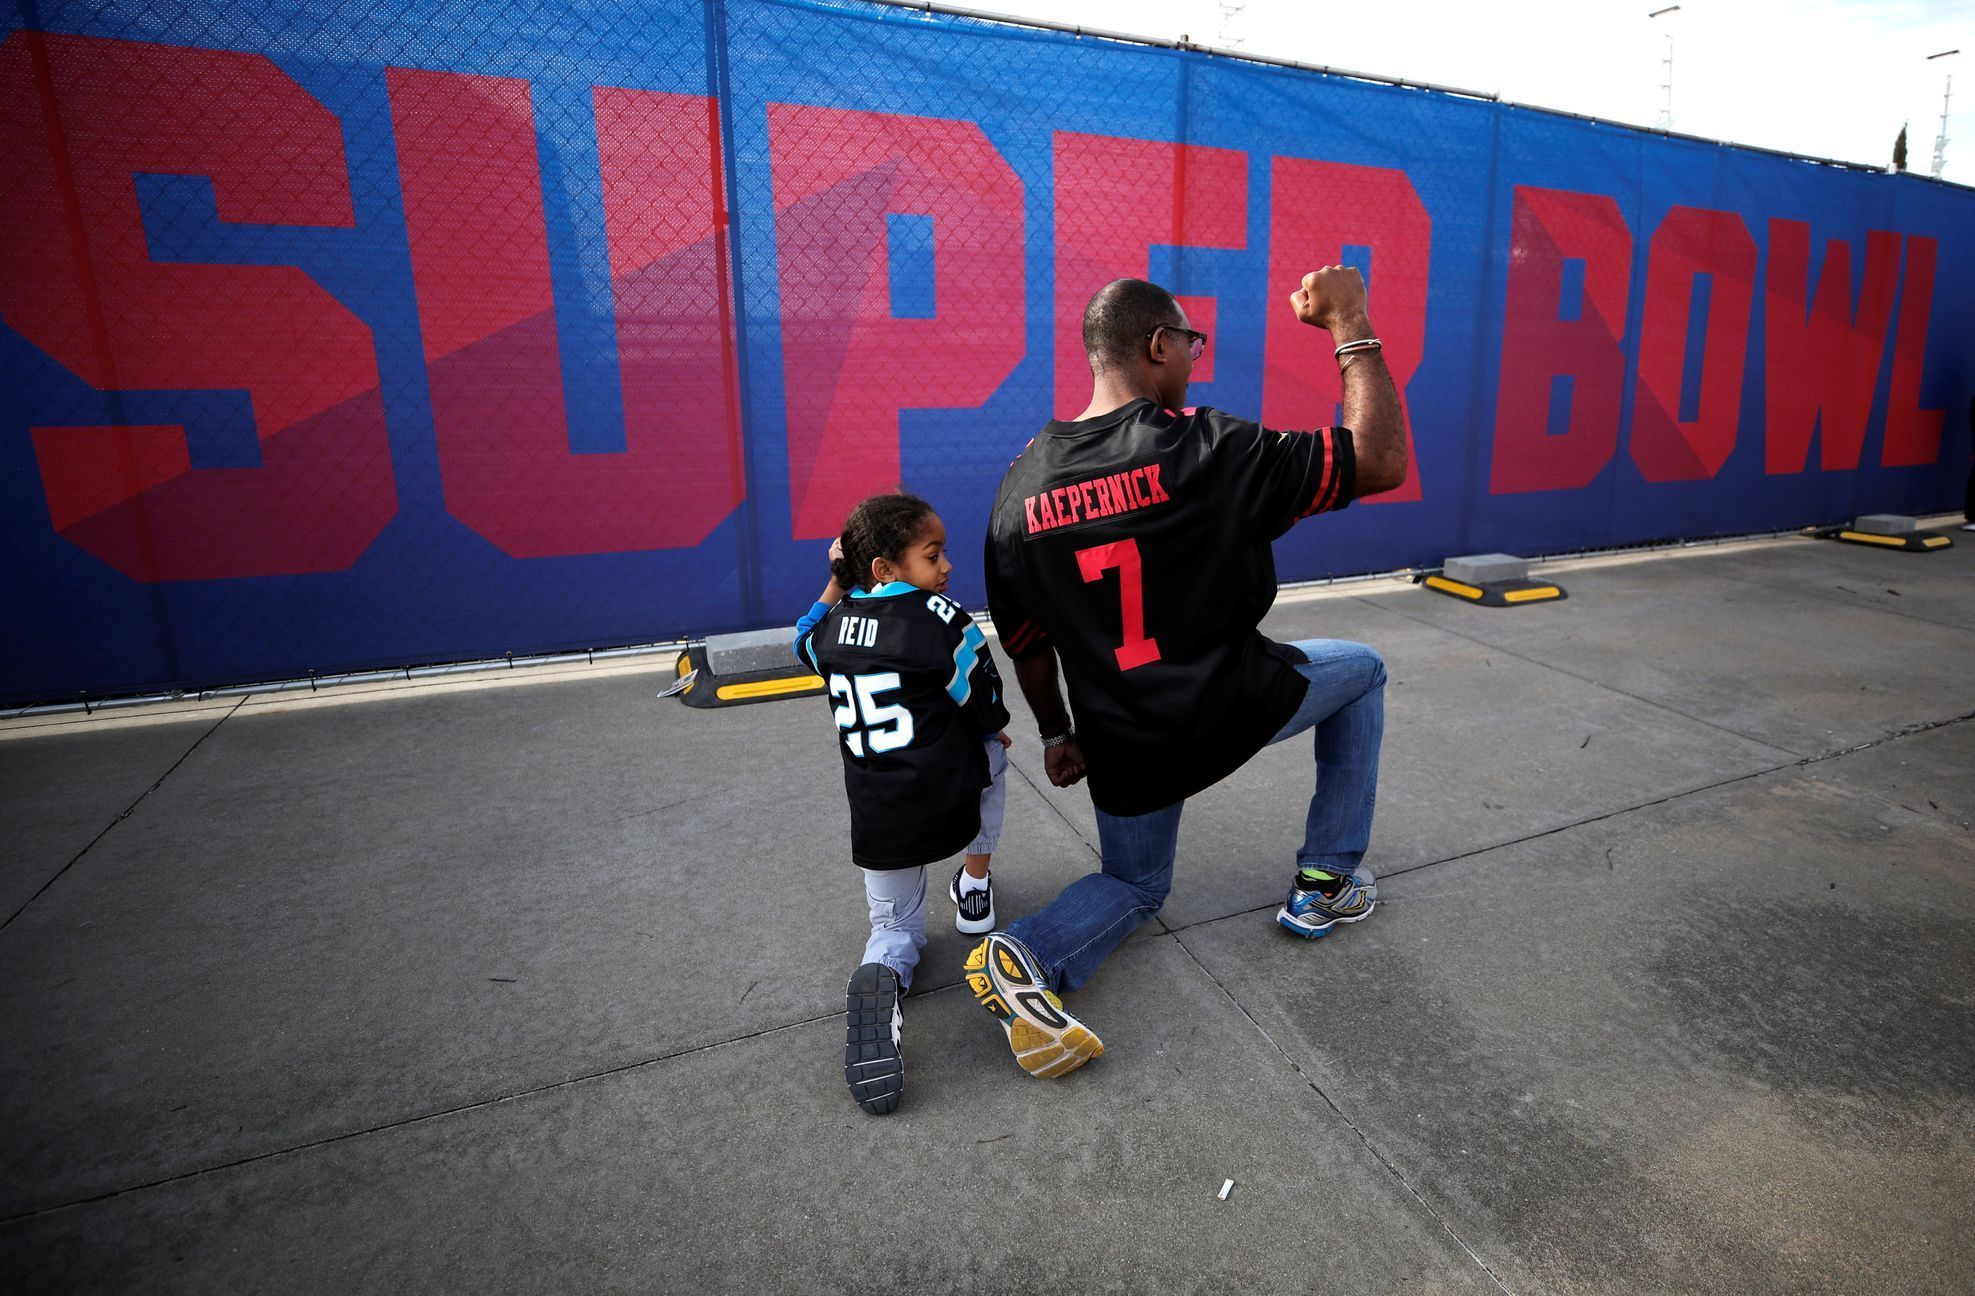 Fanoušek amerického fotbalu a jeho syn napodobuje gesto Colina Kaepernicka, jednoho z "klečících fotbalistů", na jeho podporu